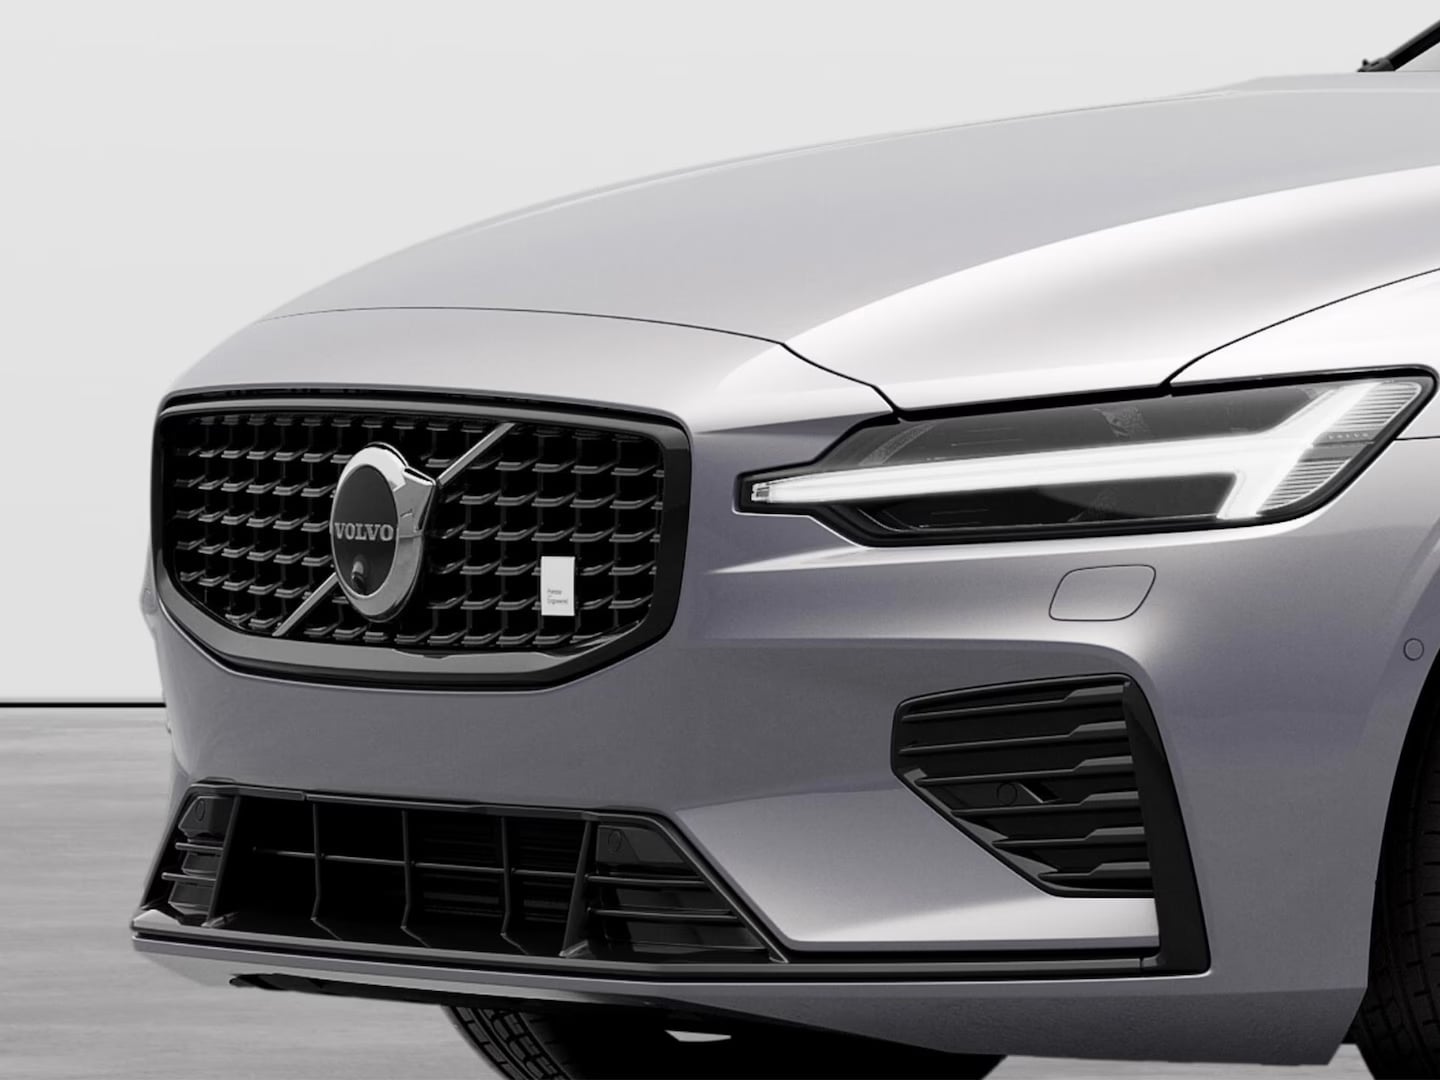 Detalle del diseño del Volvo V60 Recharge.